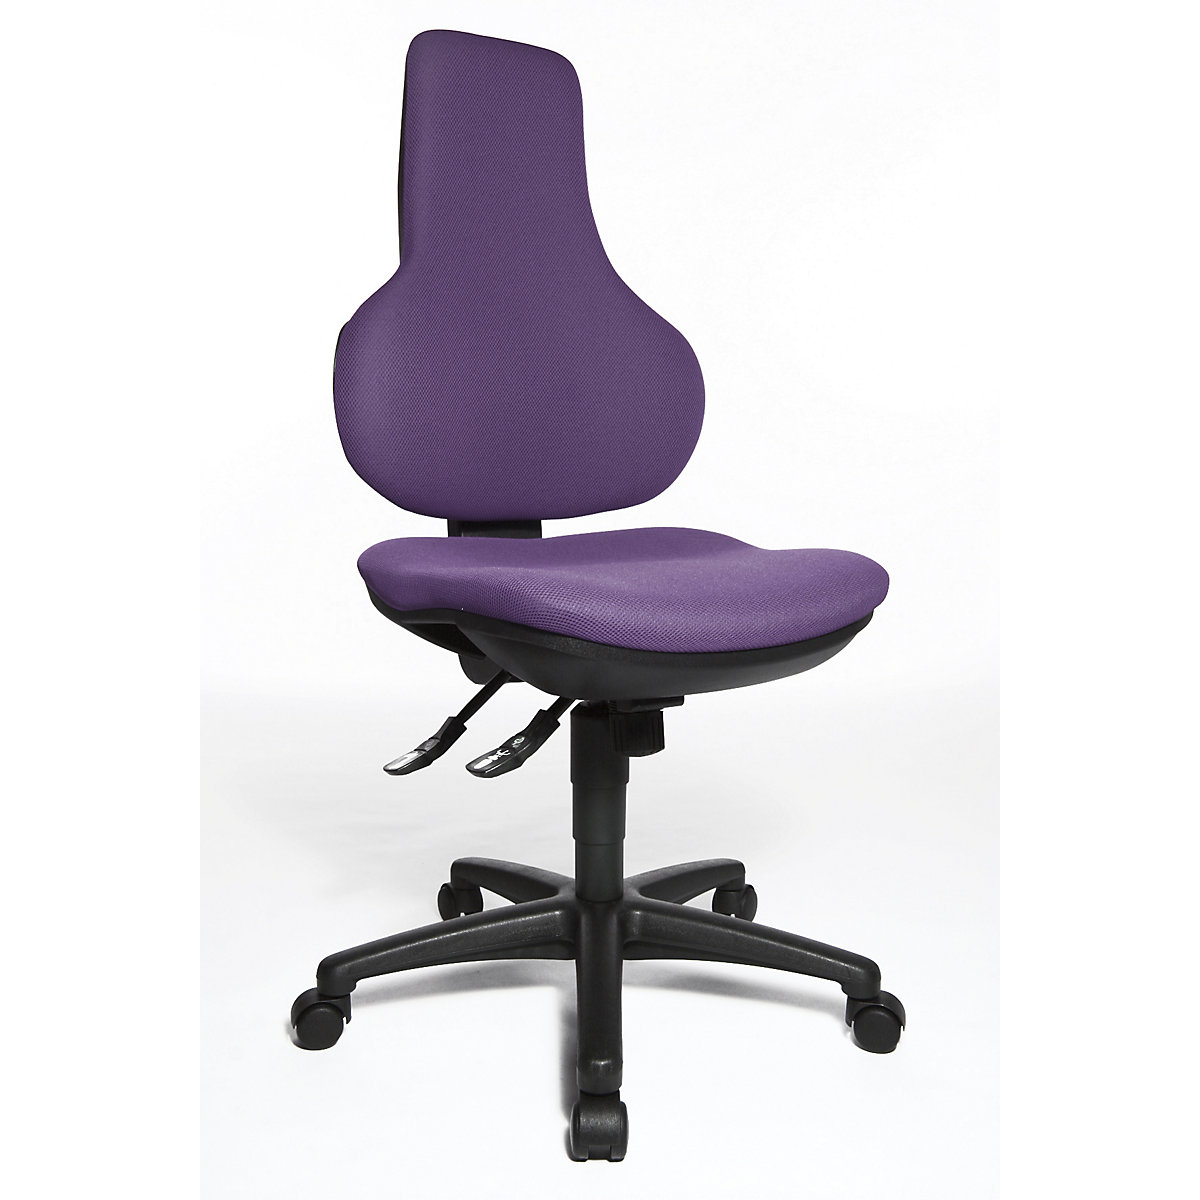 ERGO POINT SY office swivel chair - Topstar